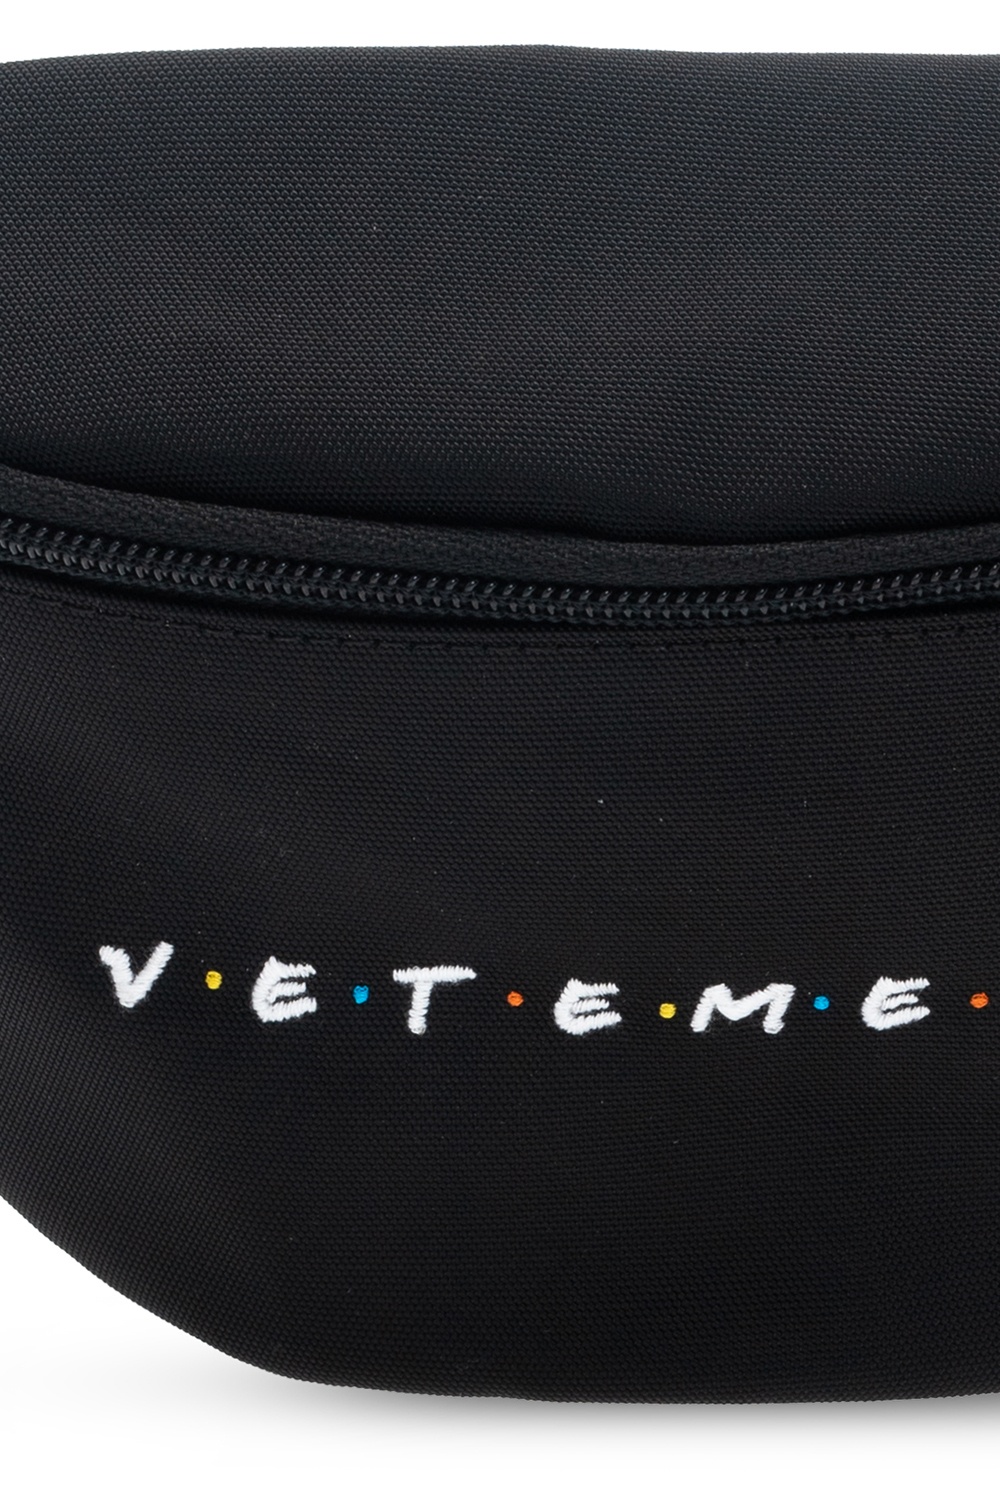 VETEMENTS Branded belt bag | Men's Bags | IetpShops